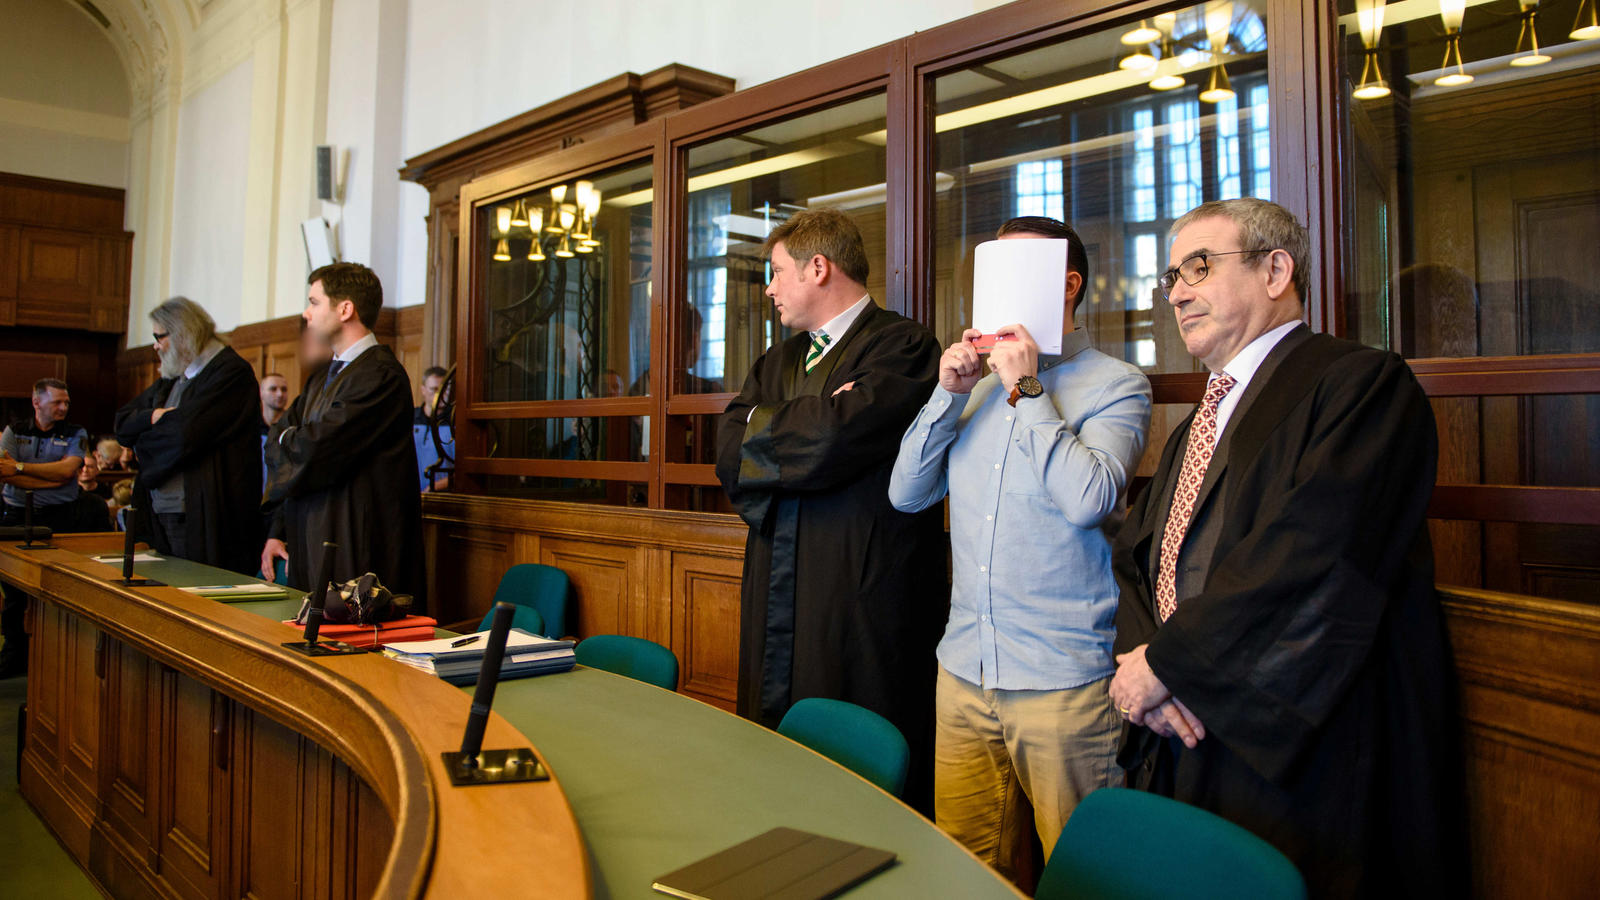 Die Angeklagte Hamdi H. (2.v.r) und  Marvin N. (5.v.r, hzalb verdeckt)  stehen am 27.02.2017 in Berlin in einem Gerichtssaal des Landgerichtes Berlin zwischen ihren Anwälten, Hamdi H. hält sich eine Akte vor das Gesicht. 